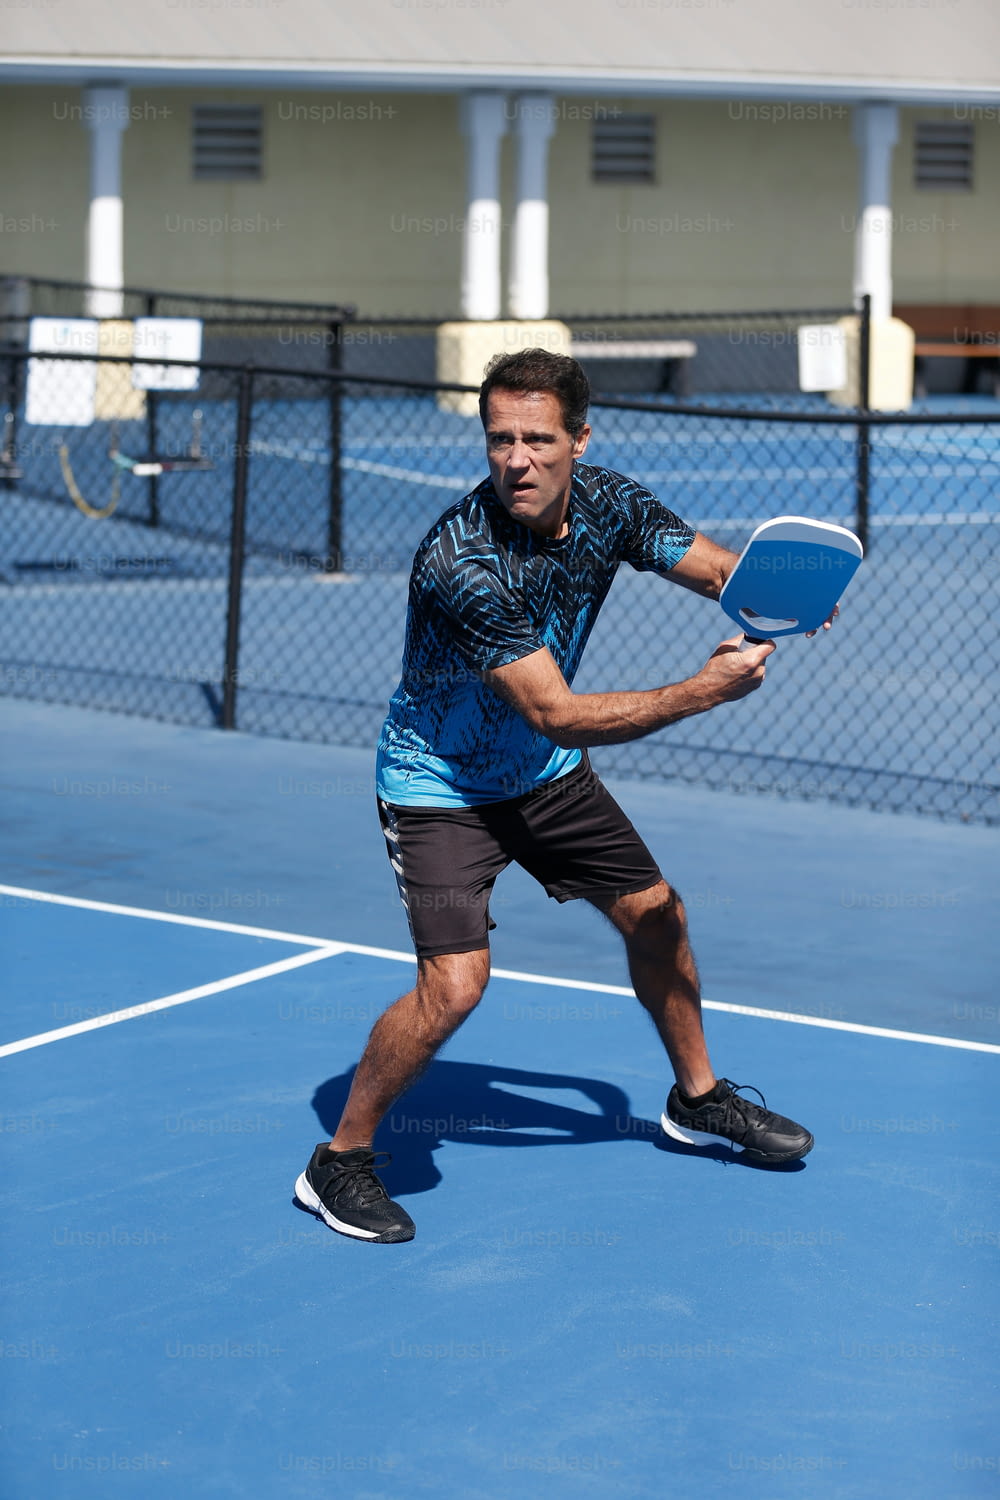 a man holding a tennis racquet on a tennis court